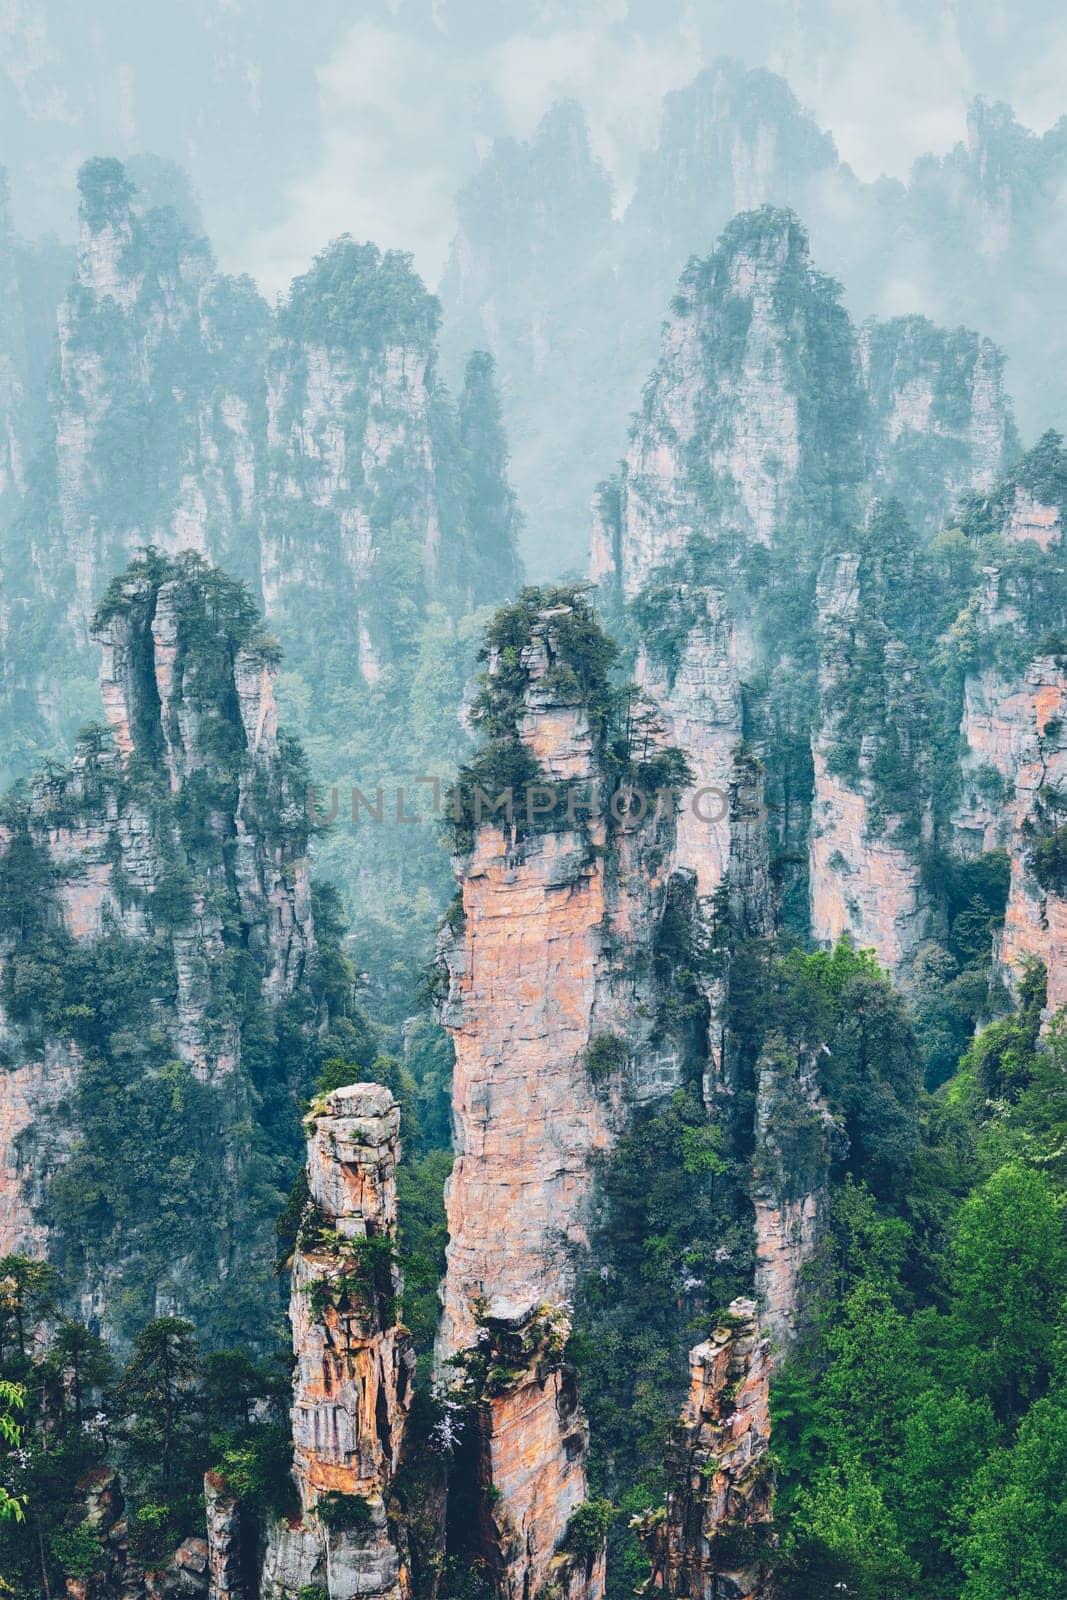 Zhangjiajie mountains, China by dimol